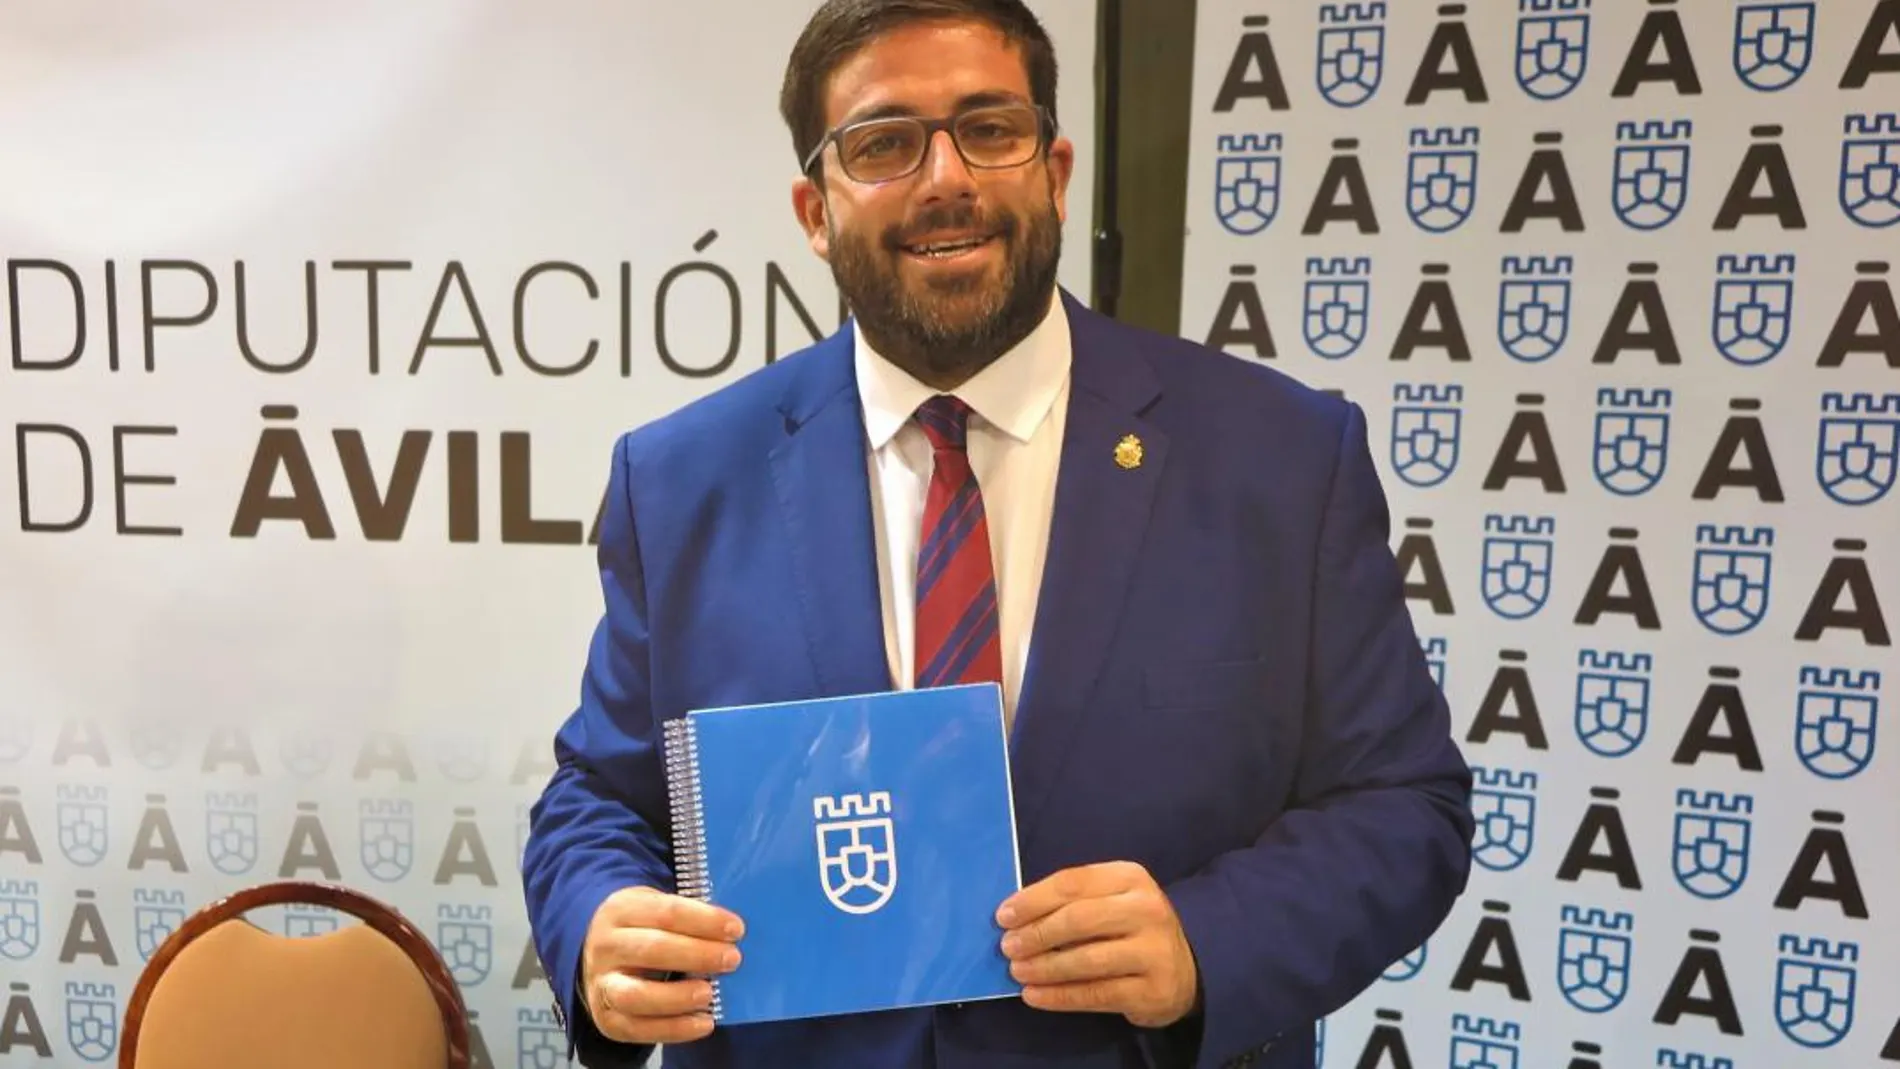 El presidente de la Diputación de Ávila, Jesús Manuel Sánchez Cabrera, muestra la imagen